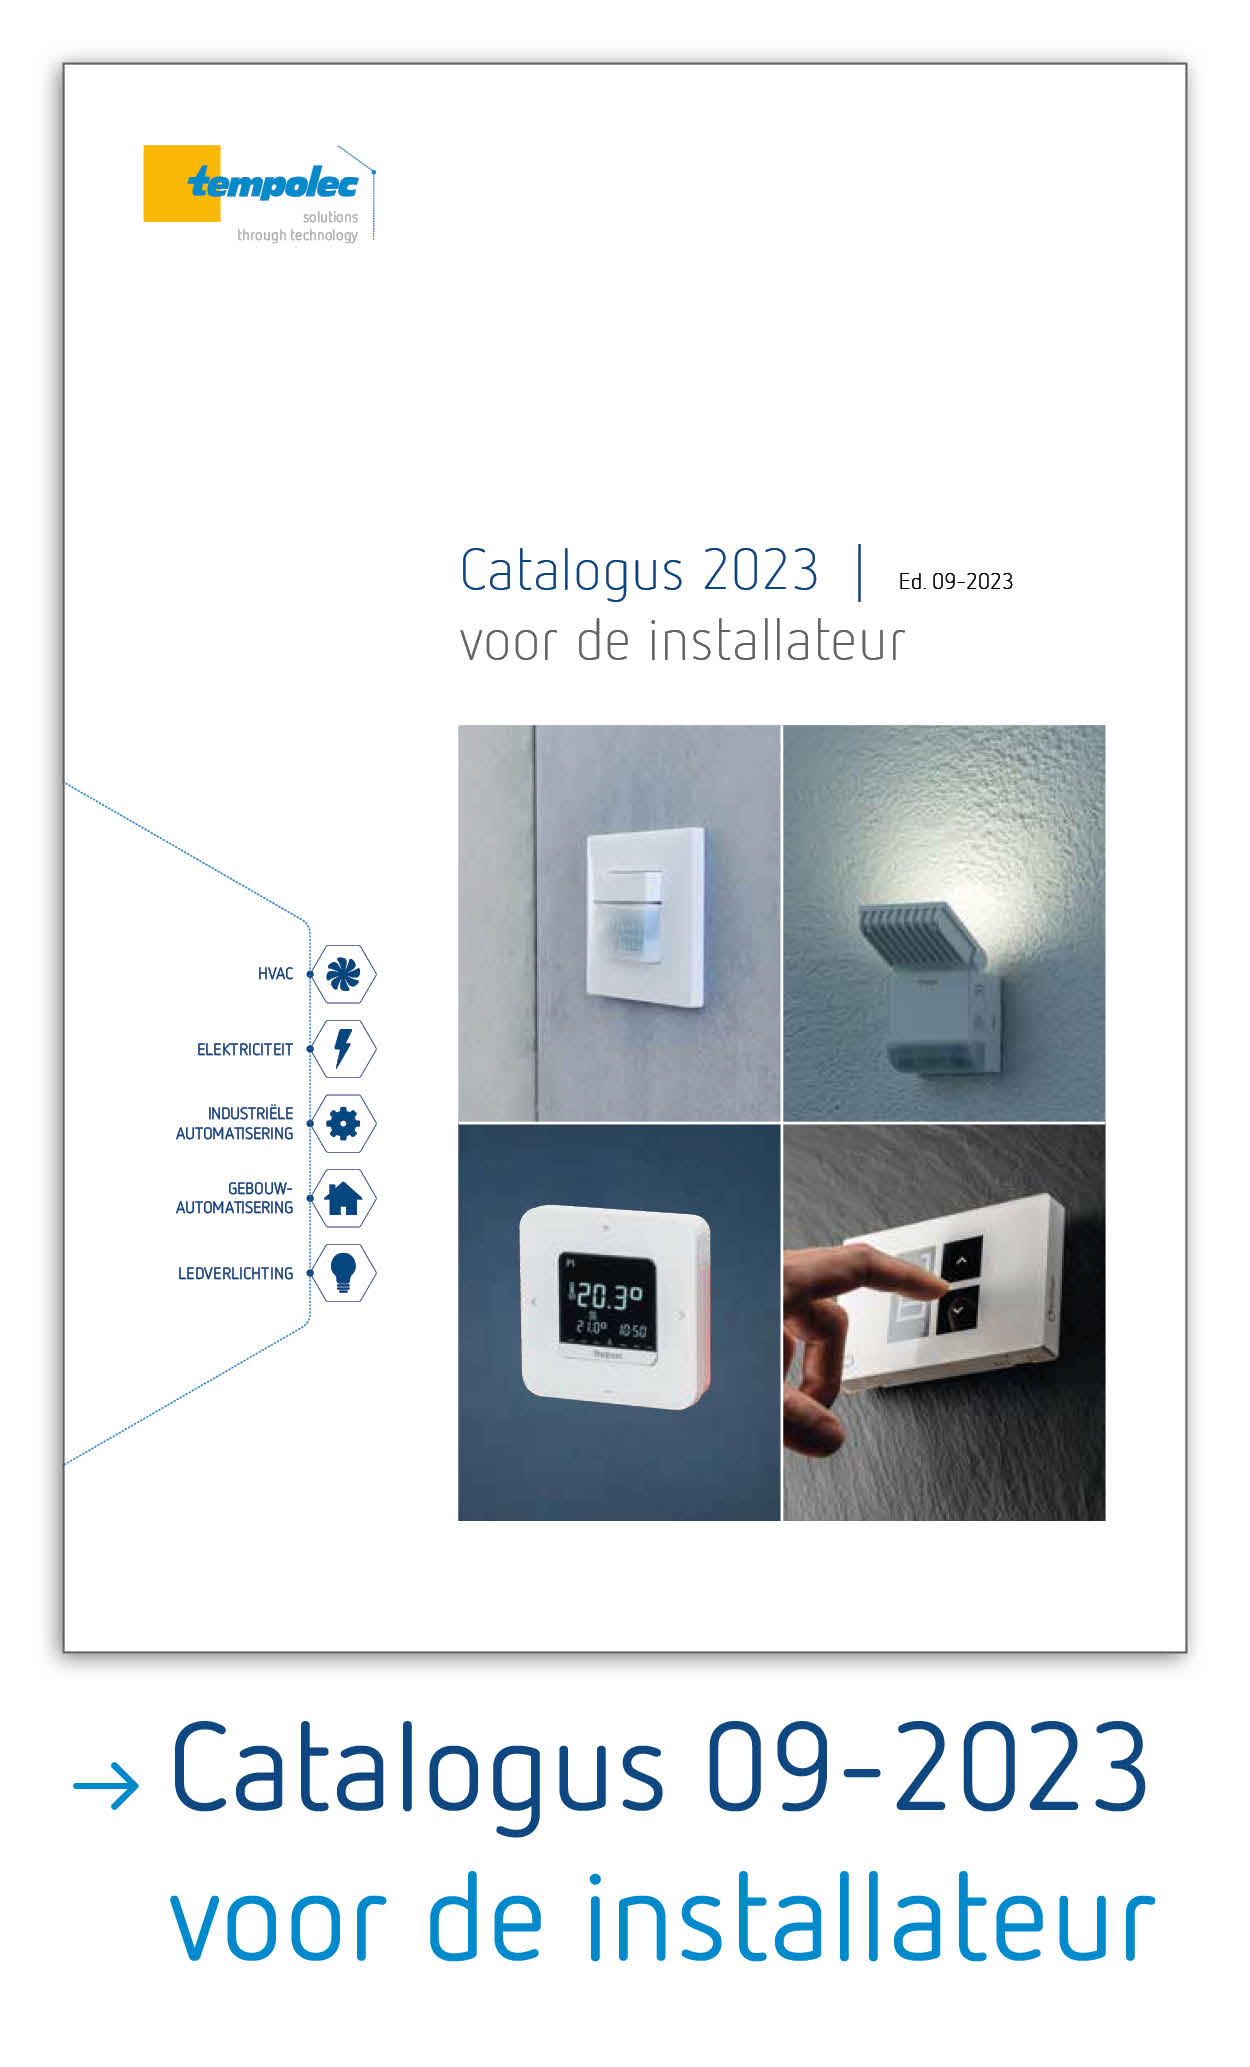 Catalogus voor de installateur  |  Ed. 09-2023